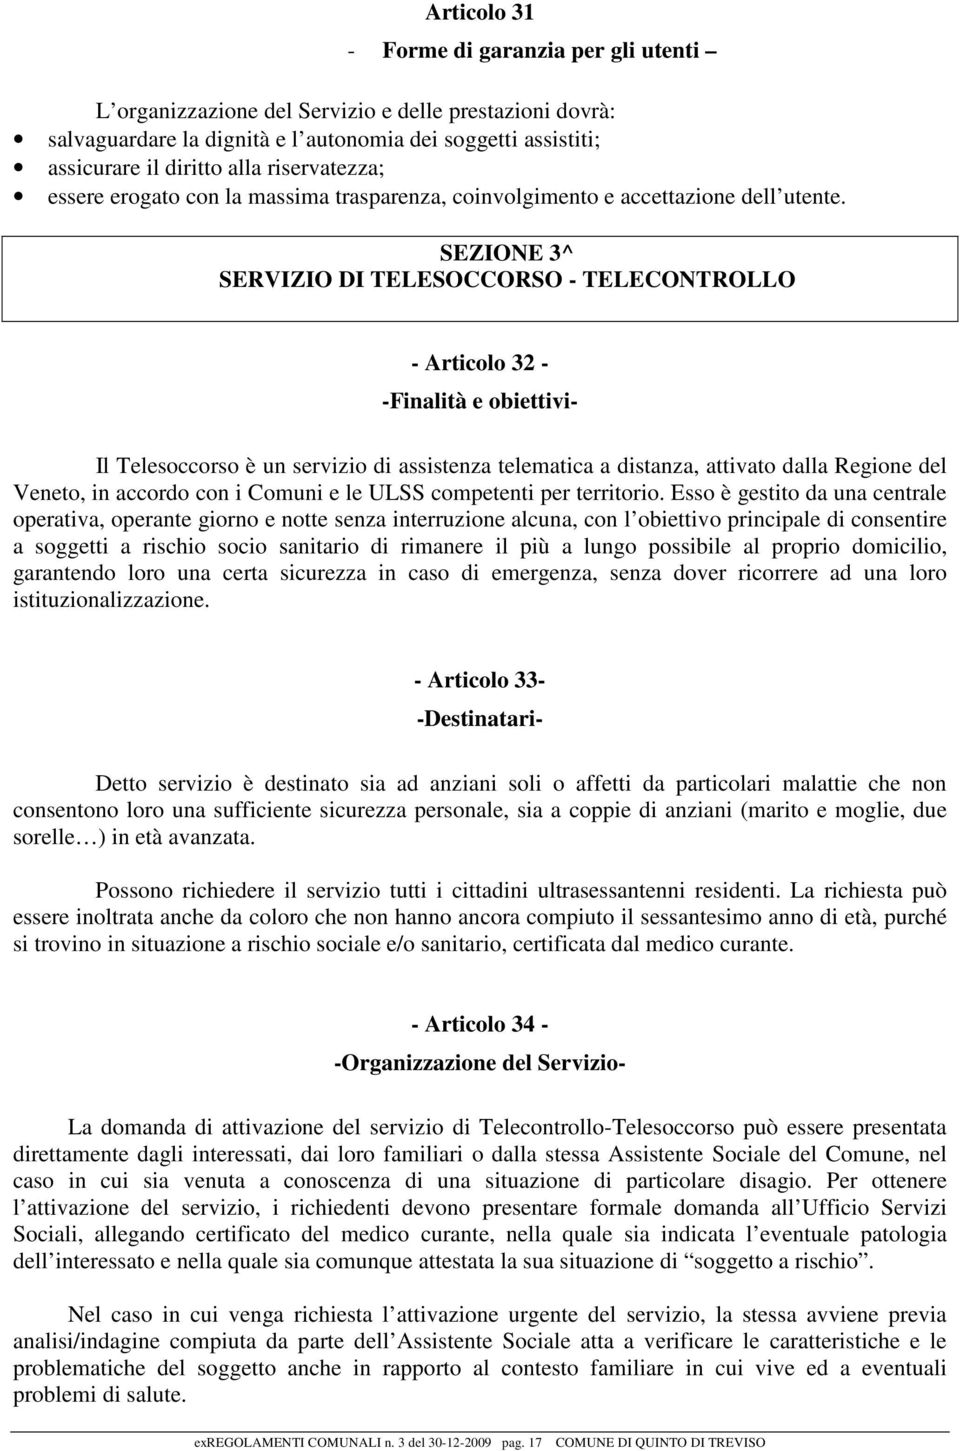 SEZIONE 3^ SERVIZIO DI TELESOCCORSO - TELECONTROLLO - Articolo 32 - -Finalità e obiettivi- Il Telesoccorso è un servizio di assistenza telematica a distanza, attivato dalla Regione del Veneto, in